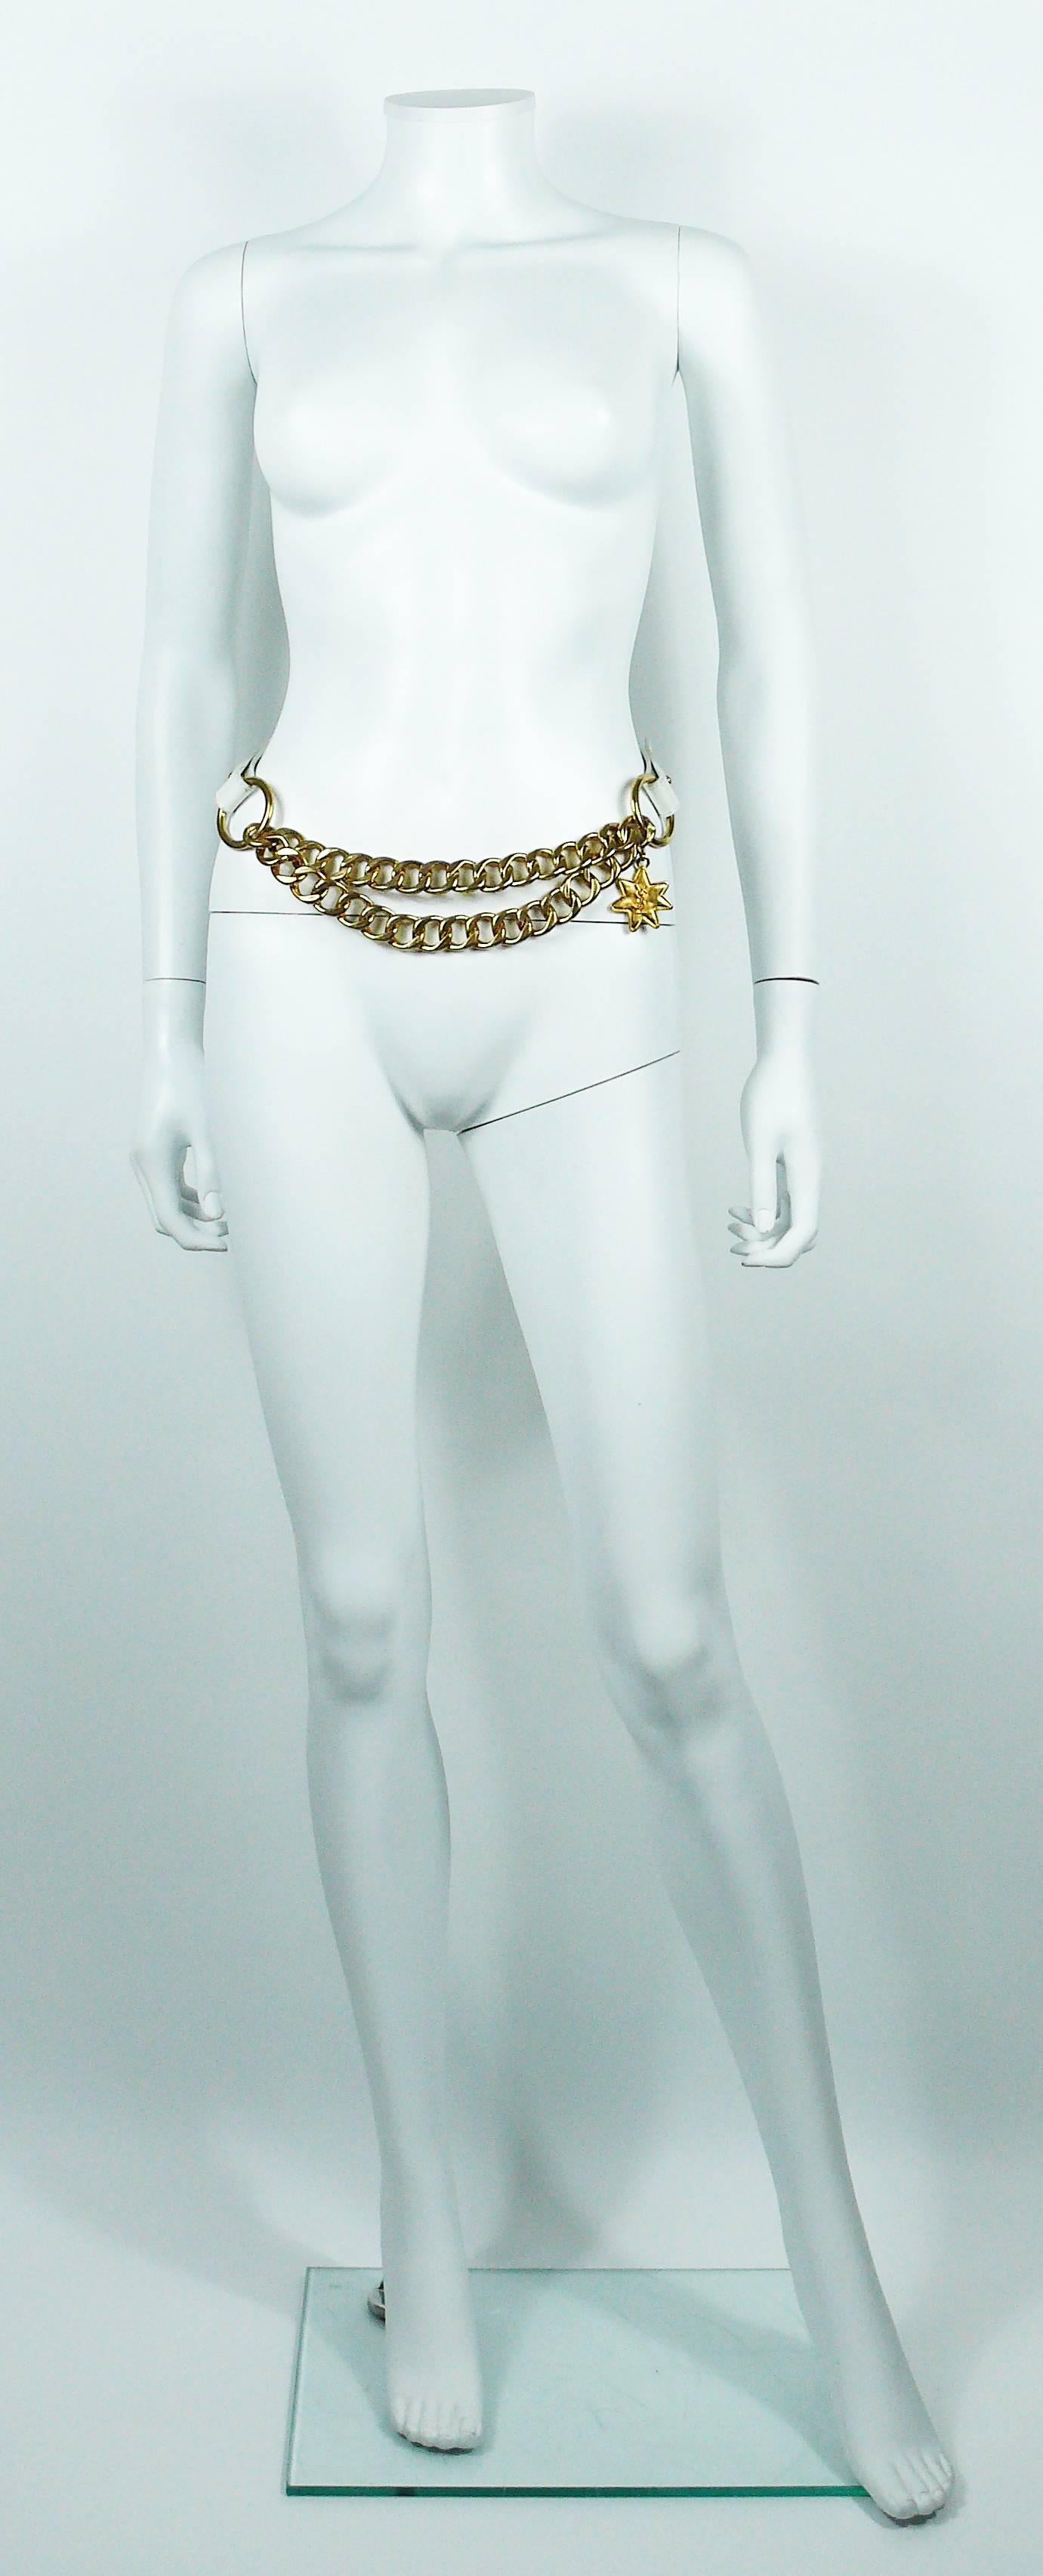 Vintage-Gürtel von YVES SAINT LAURENT mit goldfarbener Doppelkette, weißem Lederband und YSL-Sternanhänger.

Gekennzeichnet mit YVES SAINT LAURENT 0 859 80/32 Hergestellt in Frankreich.

Die Größe lautet 80/32.
Einstellbare Länge.

Ungefähre Maße: